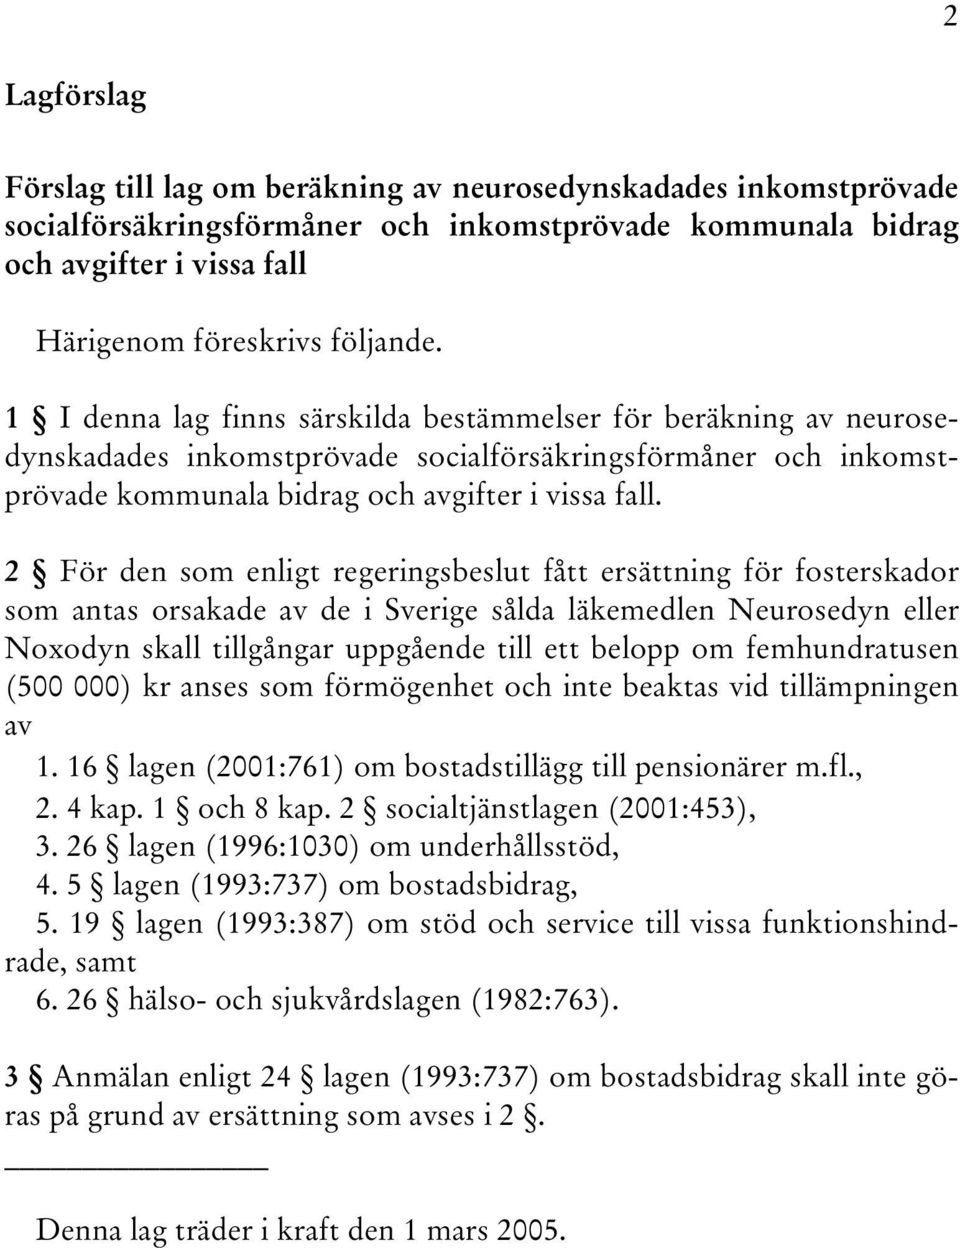 2 För den som enligt regeringsbeslut fått ersättning för fosterskador som antas orsakade av de i Sverige sålda läkemedlen Neurosedyn eller Noxodyn skall tillgångar uppgående till ett belopp om